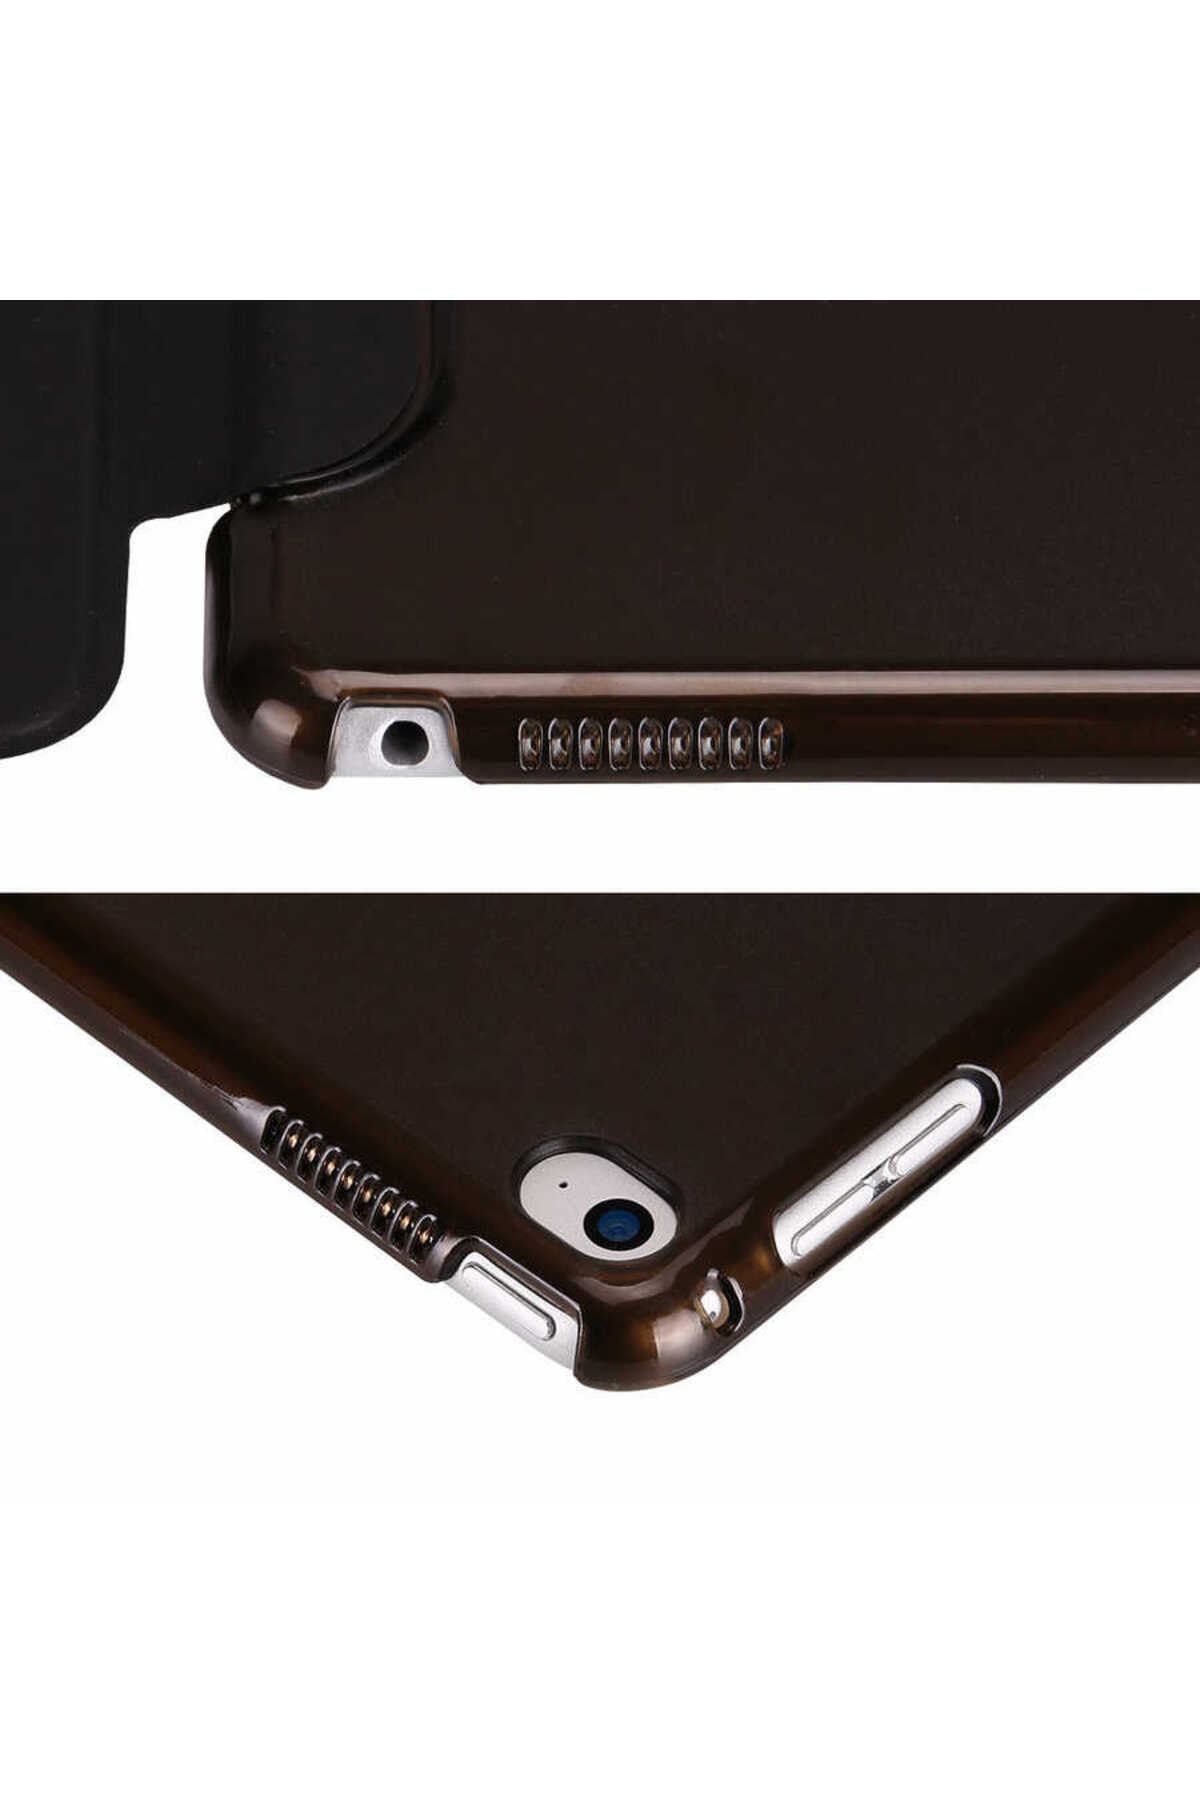 Gpack Samsung Galaxy Tab A 8.0 2019 T290 Kılıf Smart Cover Kapaklı Standlı sm11+Nano+Kalem Bronz